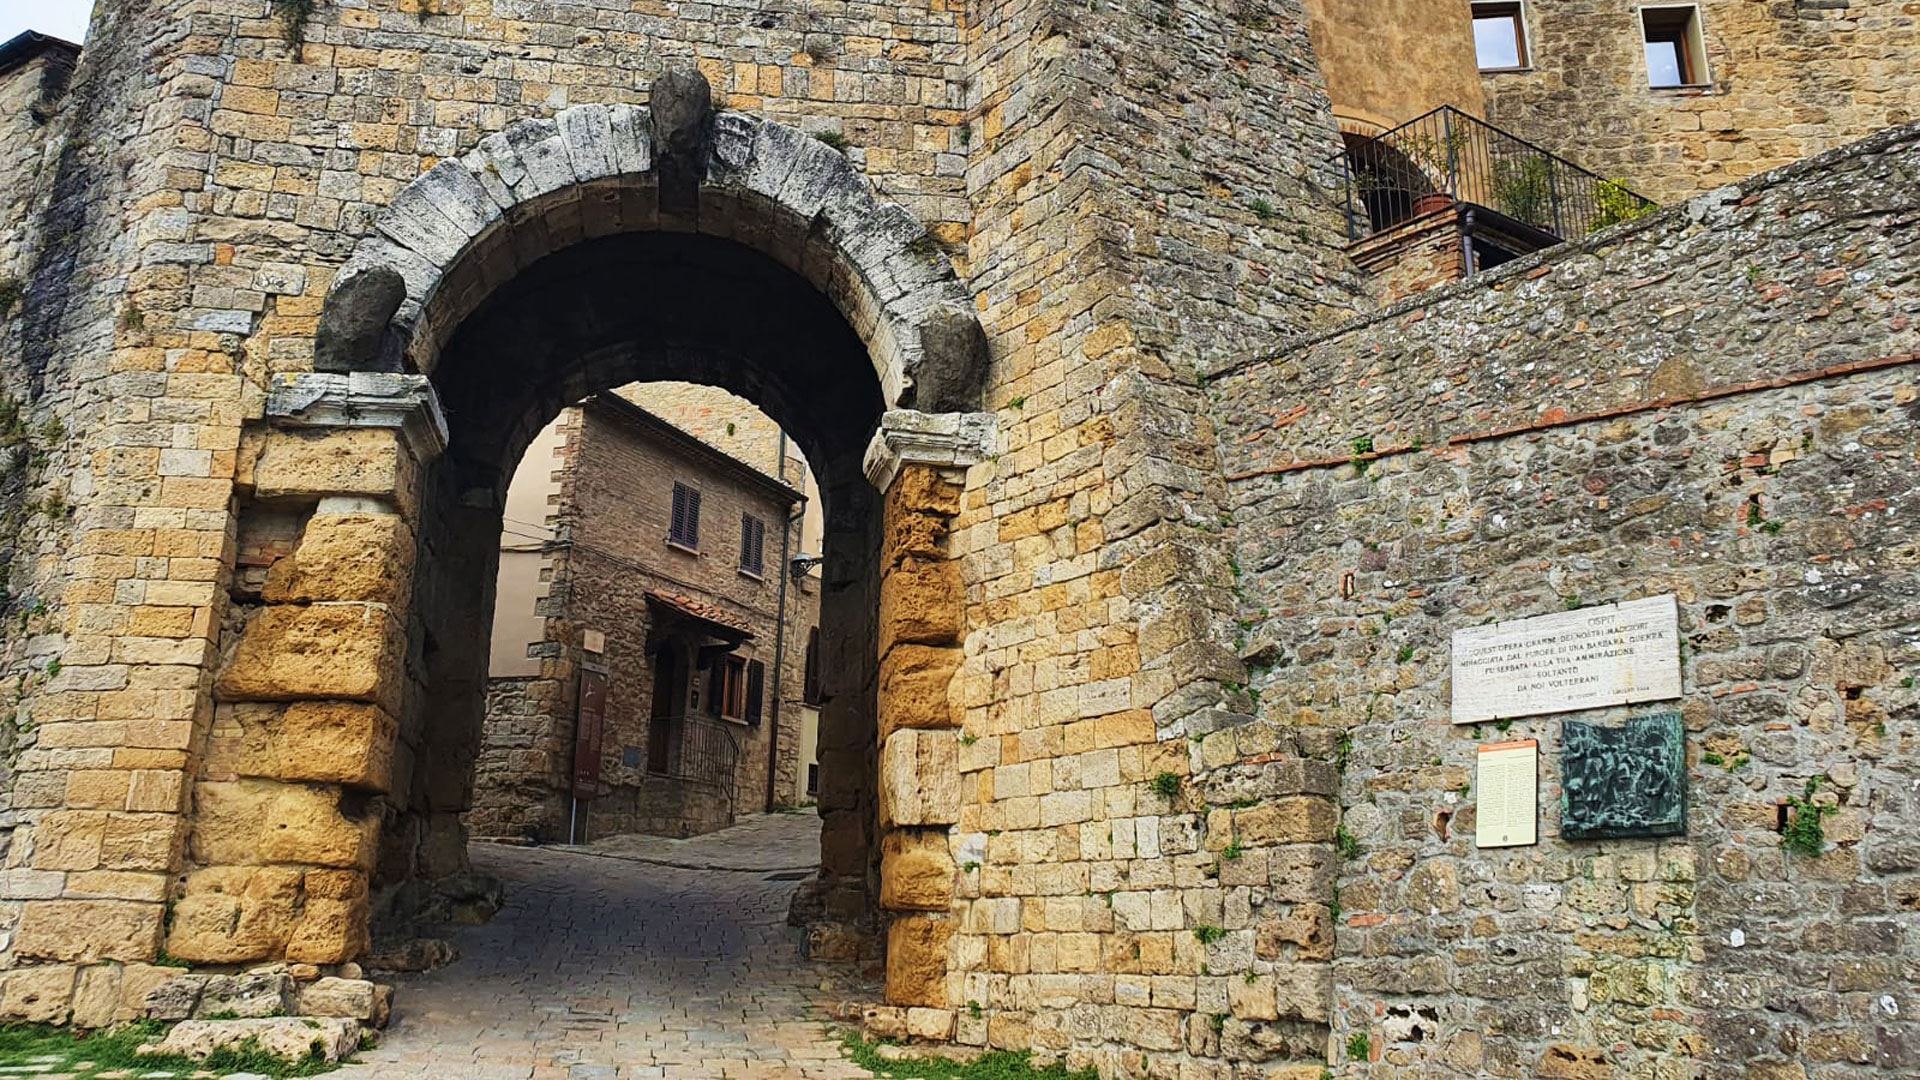 Porta all'Arco - Etruscan gateway